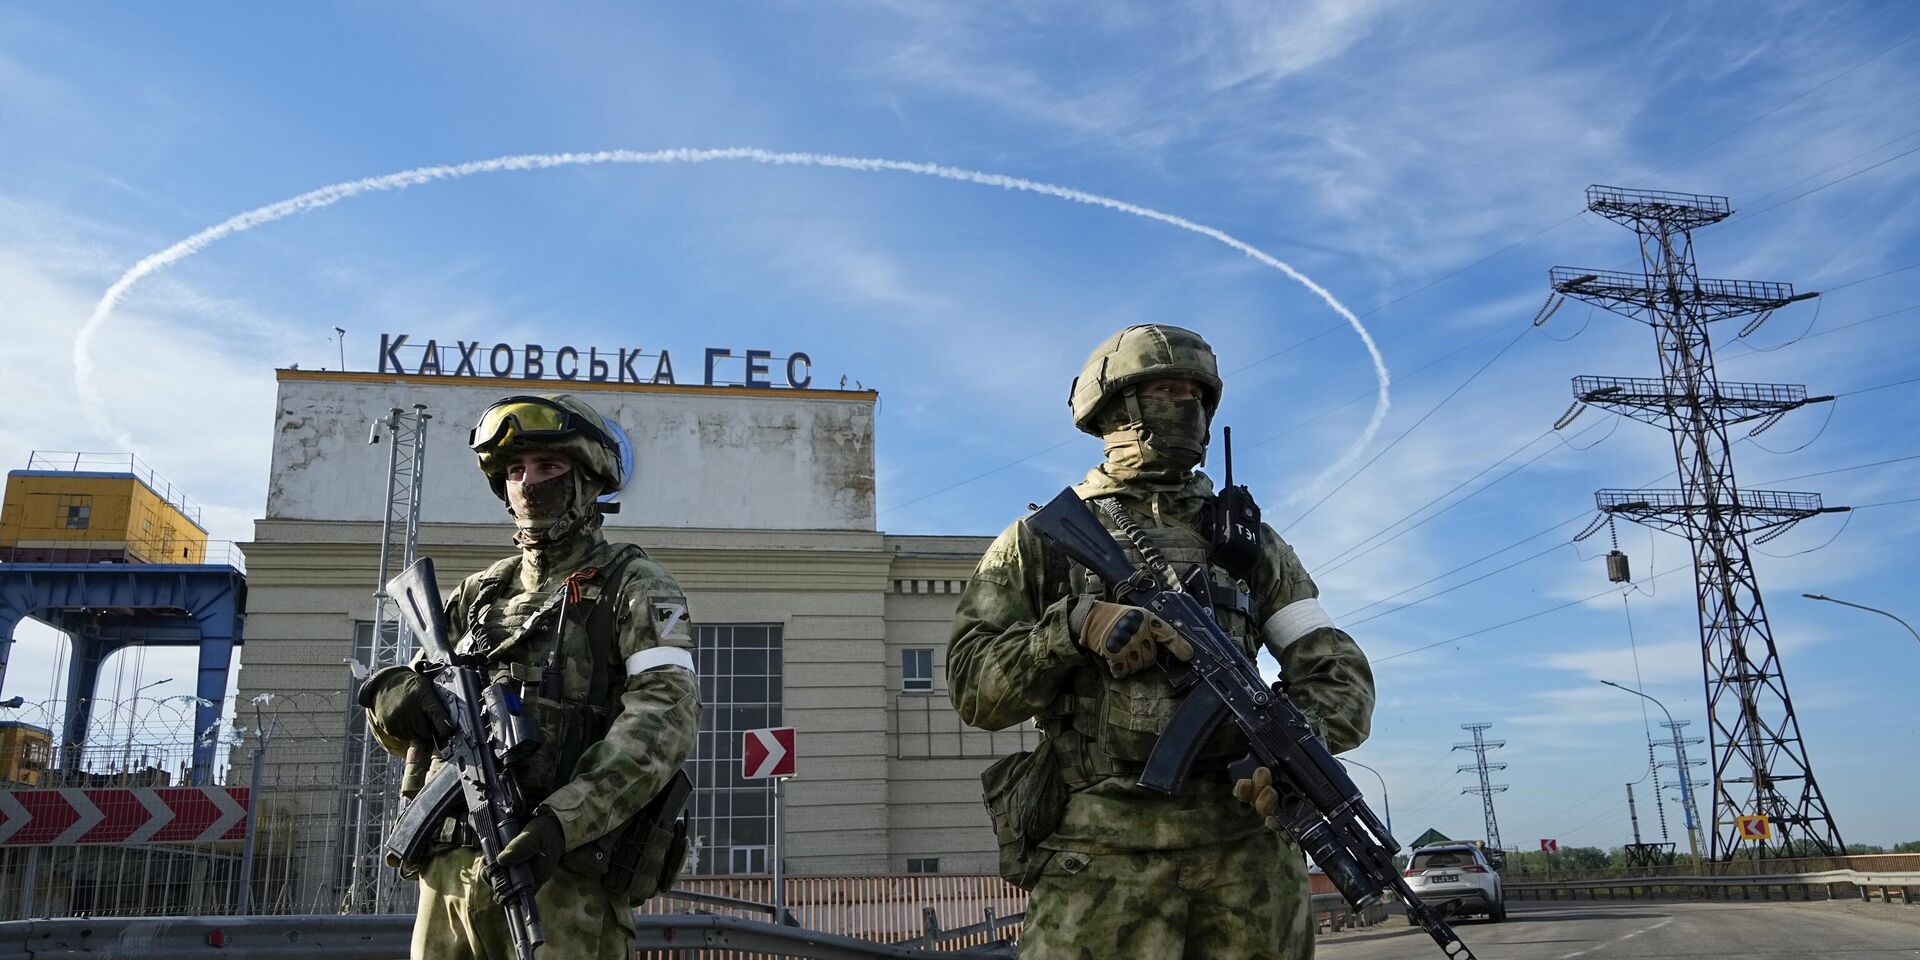 Российские войска охраняют территорию Каховской ГЭС, расположенной в Херсонской области. Пятница, 20 мая, 2022 год - ИноСМИ, 1920, 15.06.2023